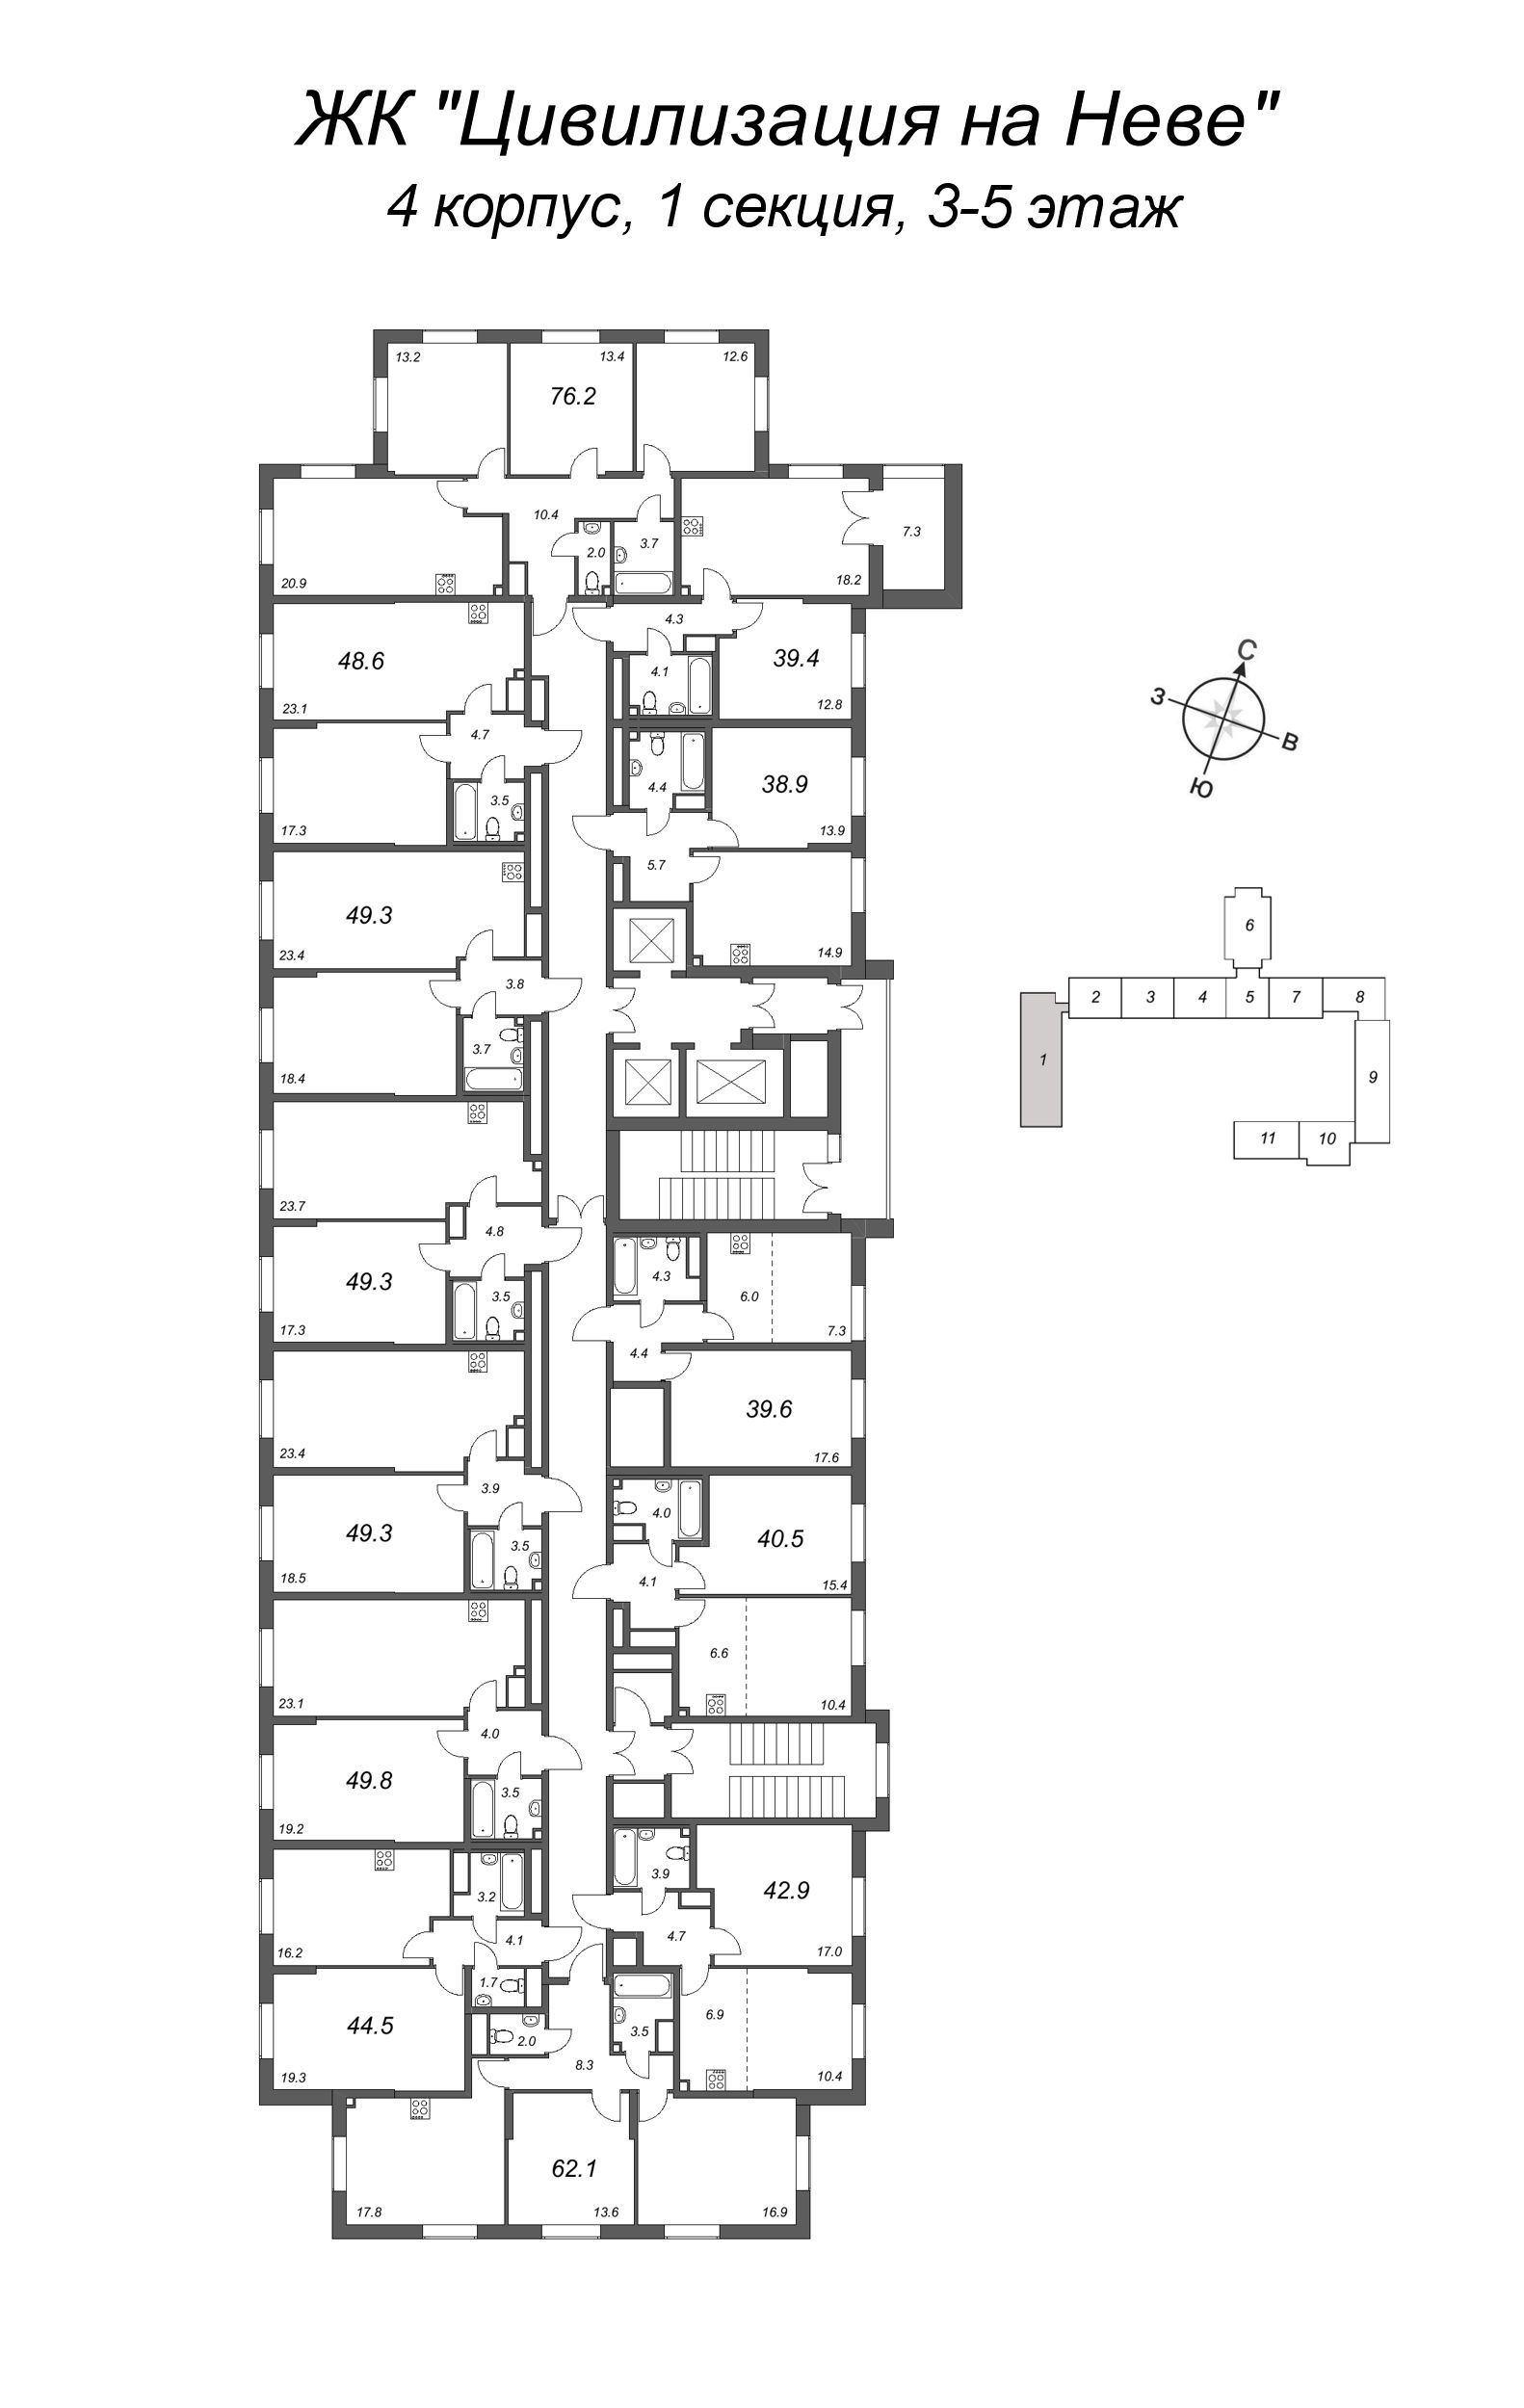 2-комнатная (Евро) квартира, 49.3 м² в ЖК "Цивилизация на Неве" - планировка этажа